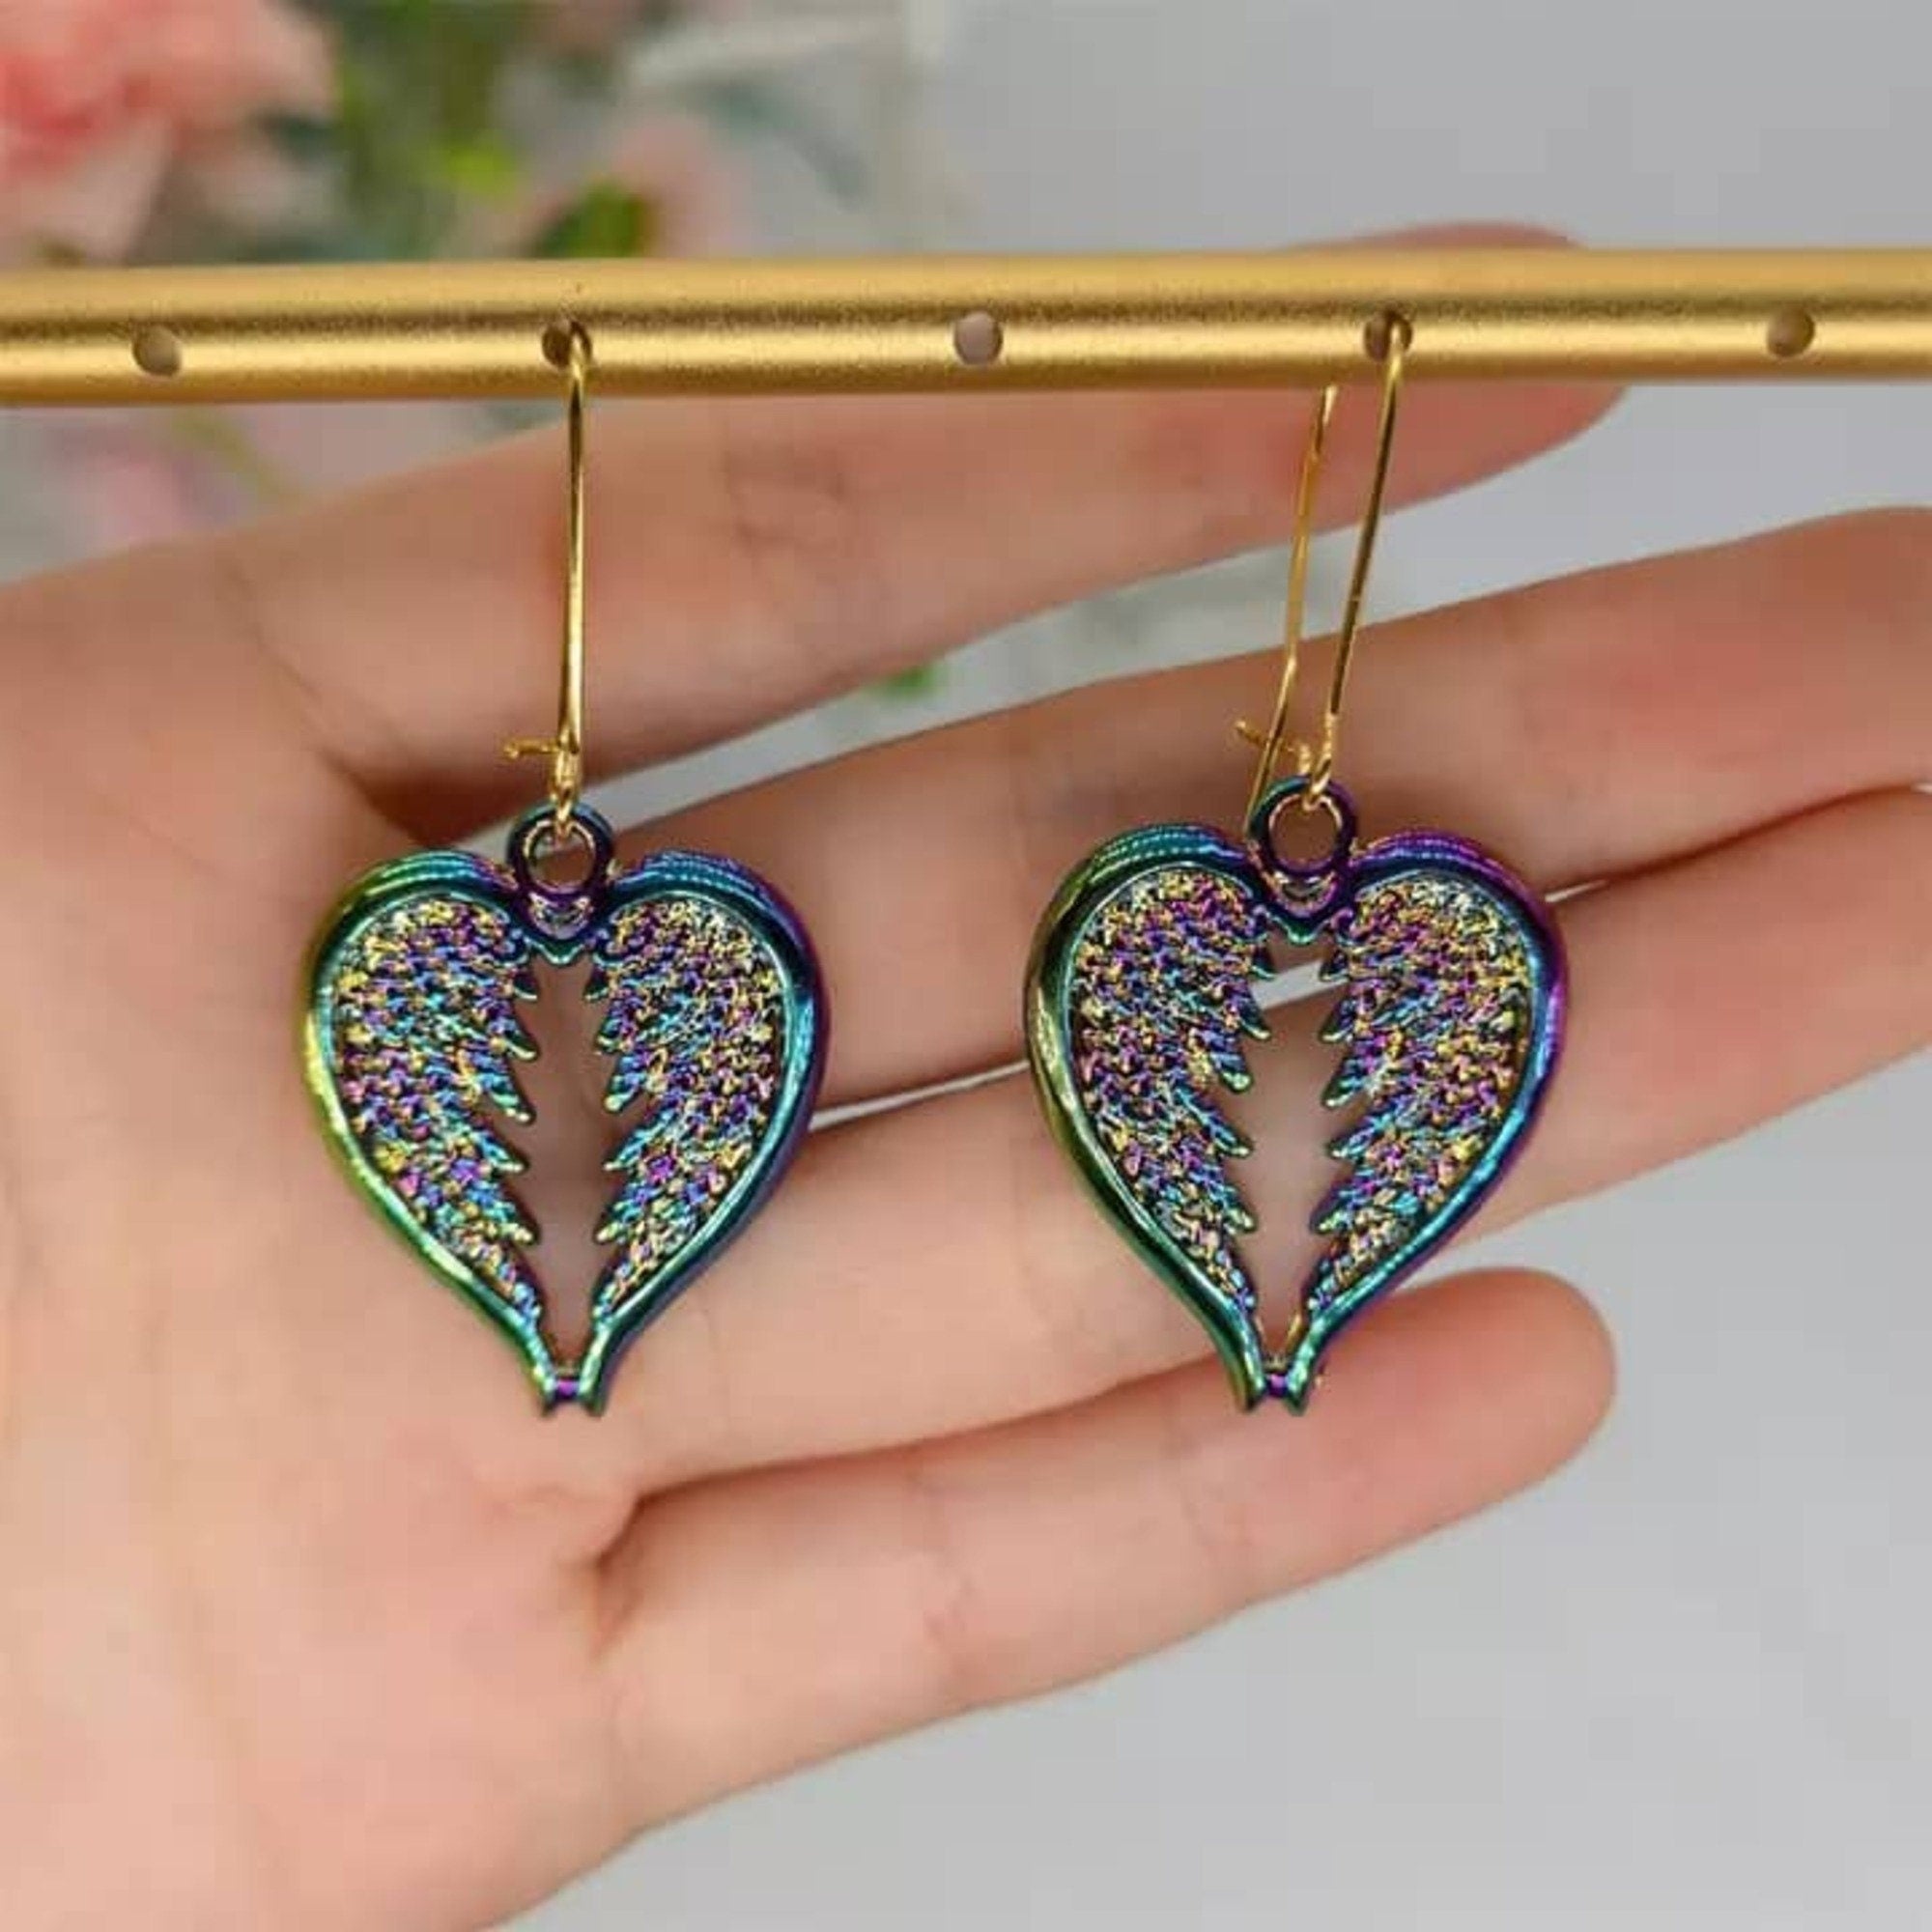 Broken Heart Earrings Love Bug Earrings Cute Earrings Gothic Earrings  Iridescent Earrings Dainty Earrings Tiny Rainbow Earrings Gift For Her